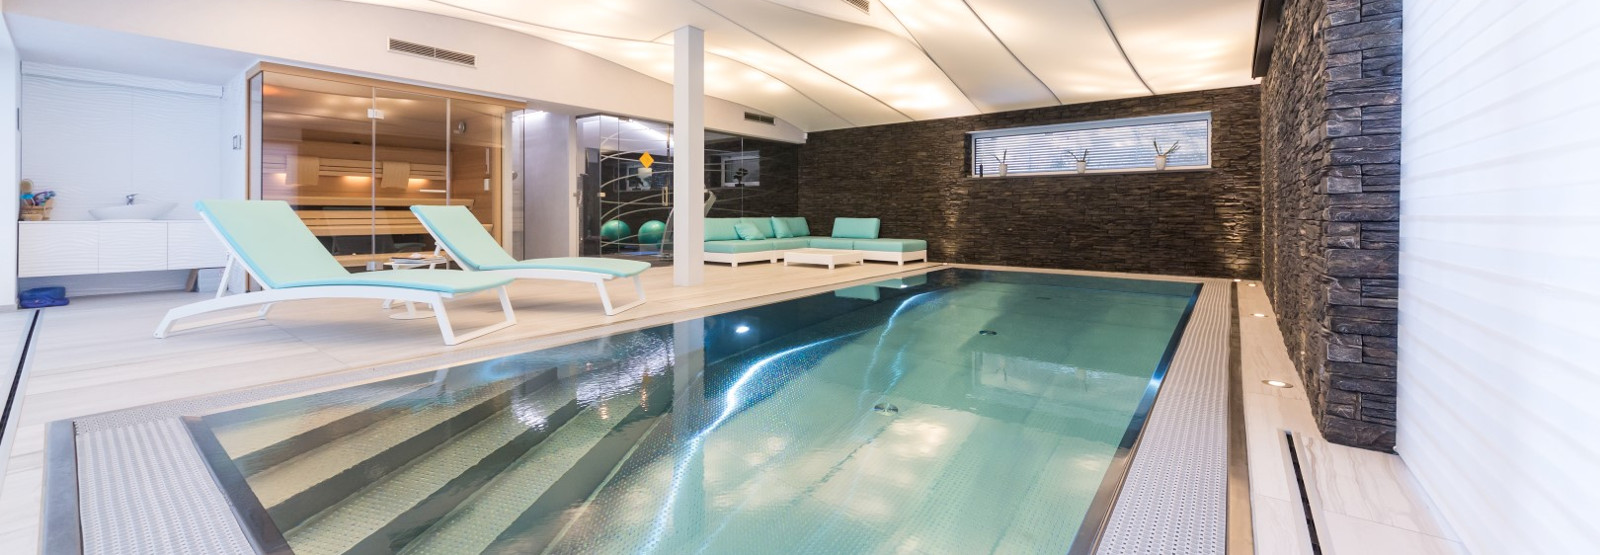 Luxusní privátní přelivní bazén Imaginox z nerezové oceli v interiéru